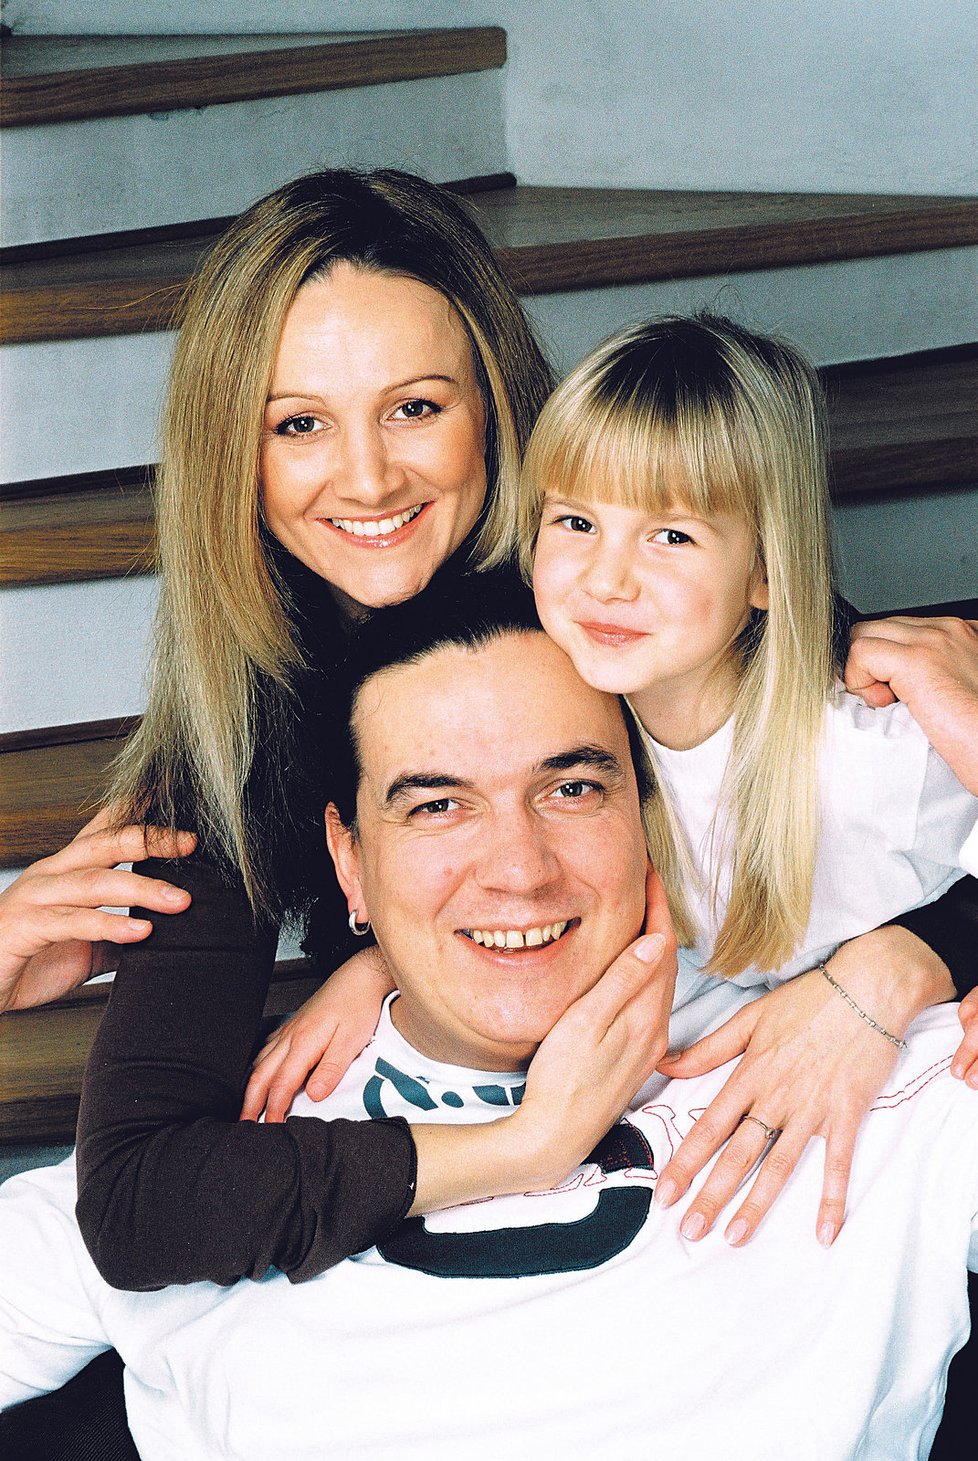 V roce 2005 s tehdy sedmiletou dcerkou Viktorkou